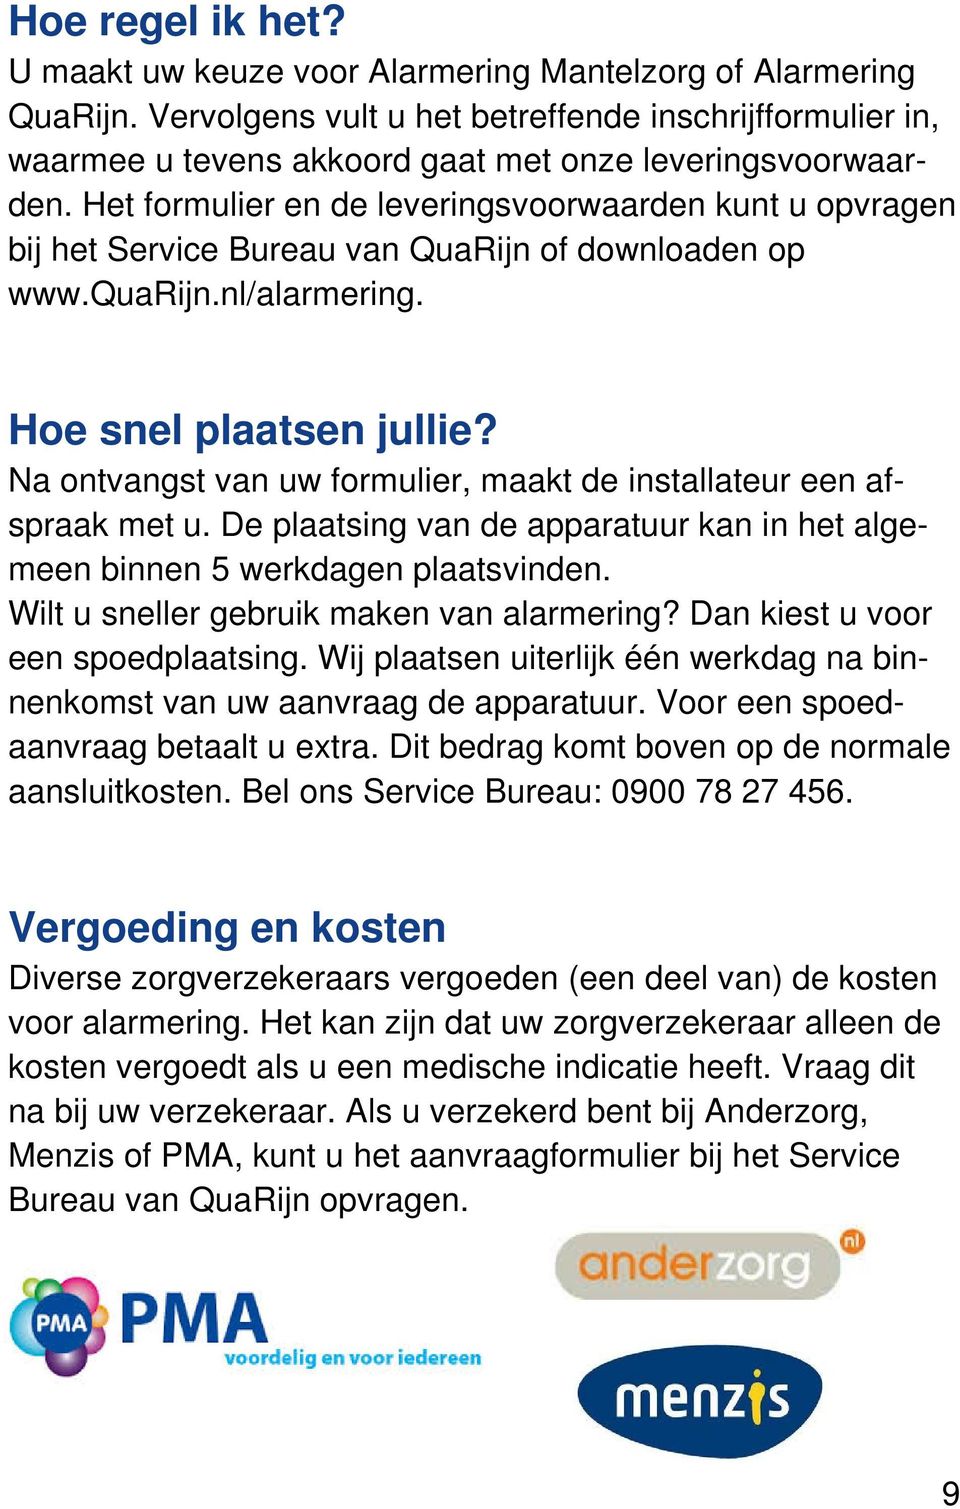 Het formulier en de leveringsvoorwaarden kunt u opvragen bij het Service Bureau van QuaRijn of downloaden op www.quarijn.nl/alarmering. Hoe snel plaatsen jullie?